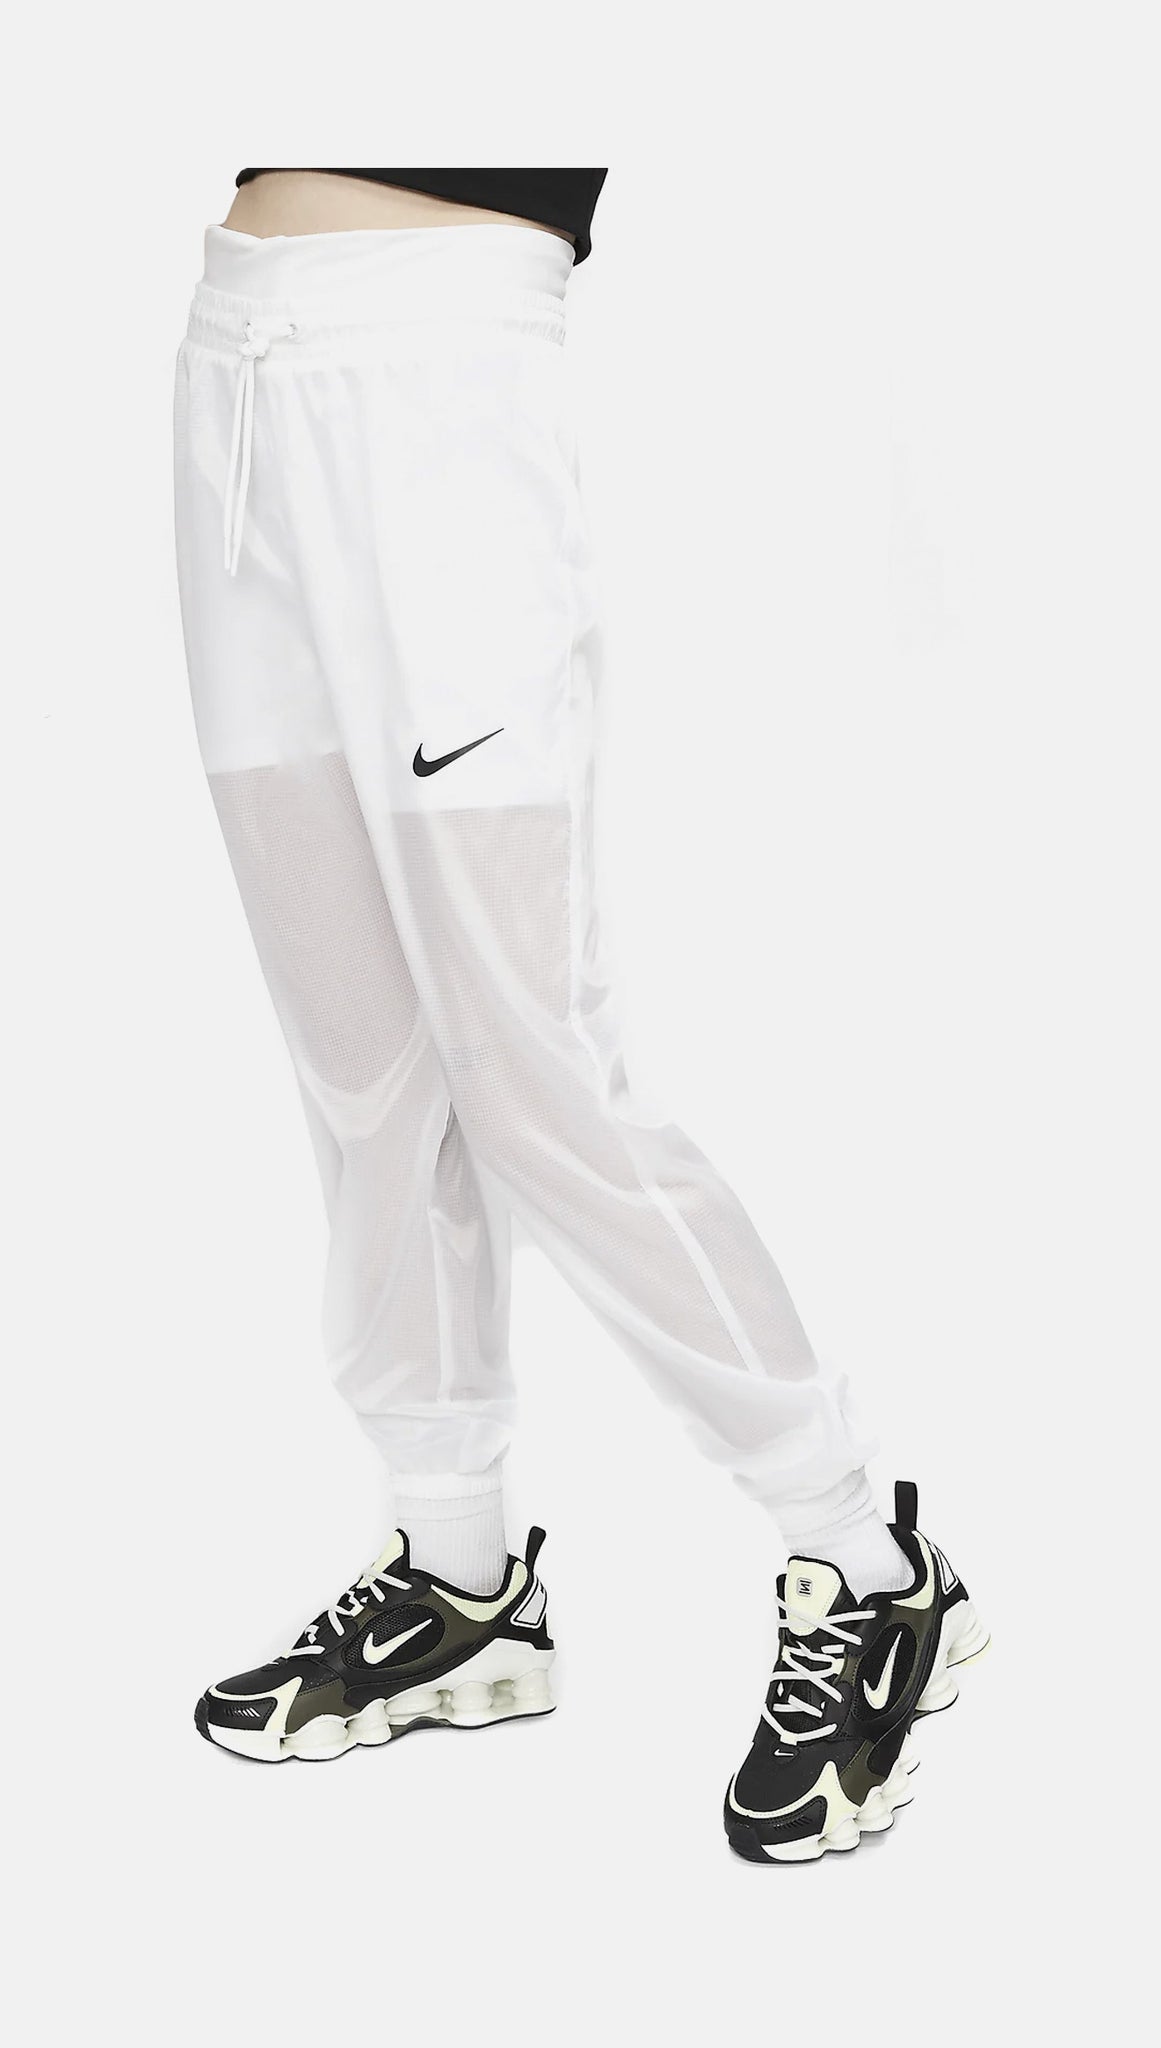 Nike Sportswear Women's Woven Trousers CJ7347-010 Black/White SZ XS-3XL 